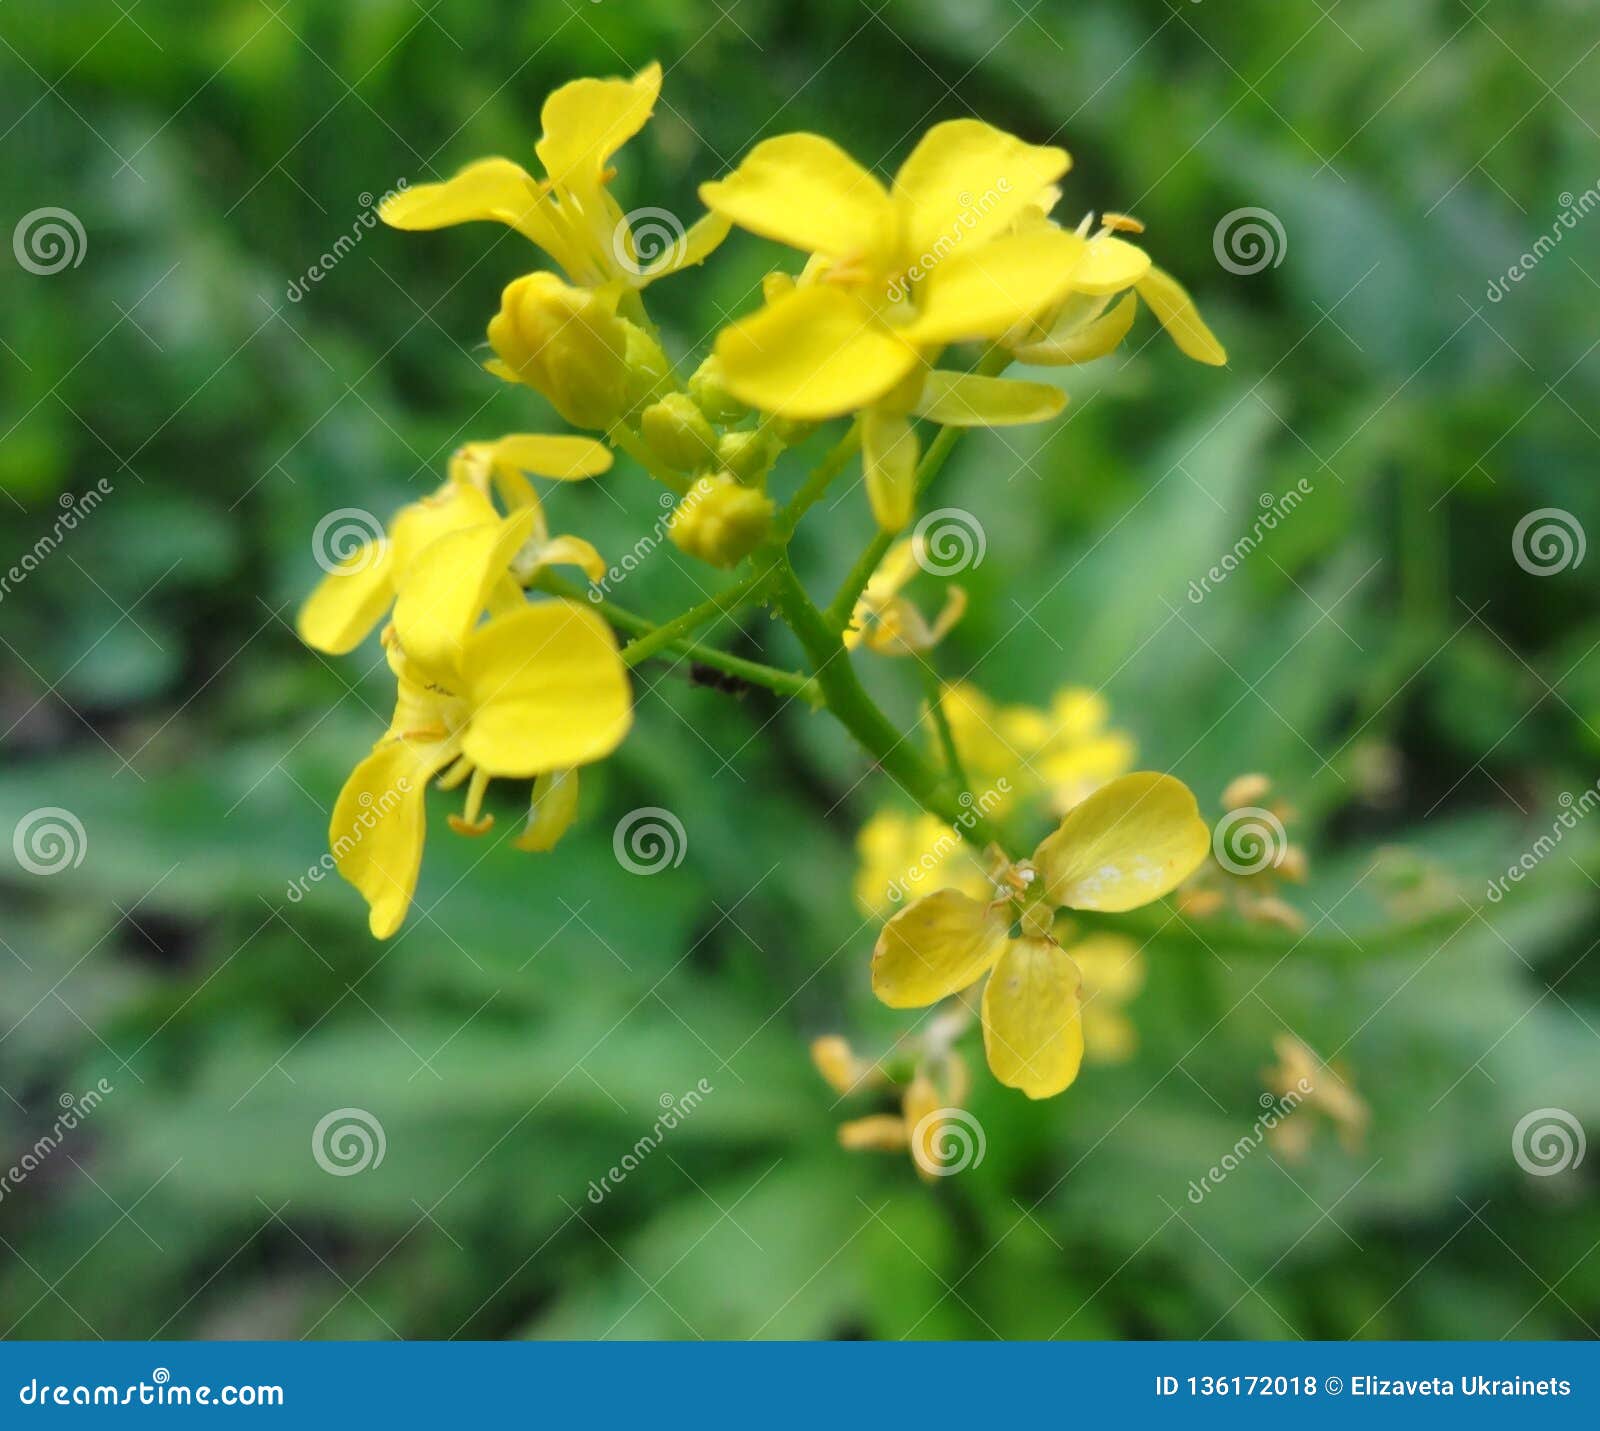 cruciferae. yellow flowers